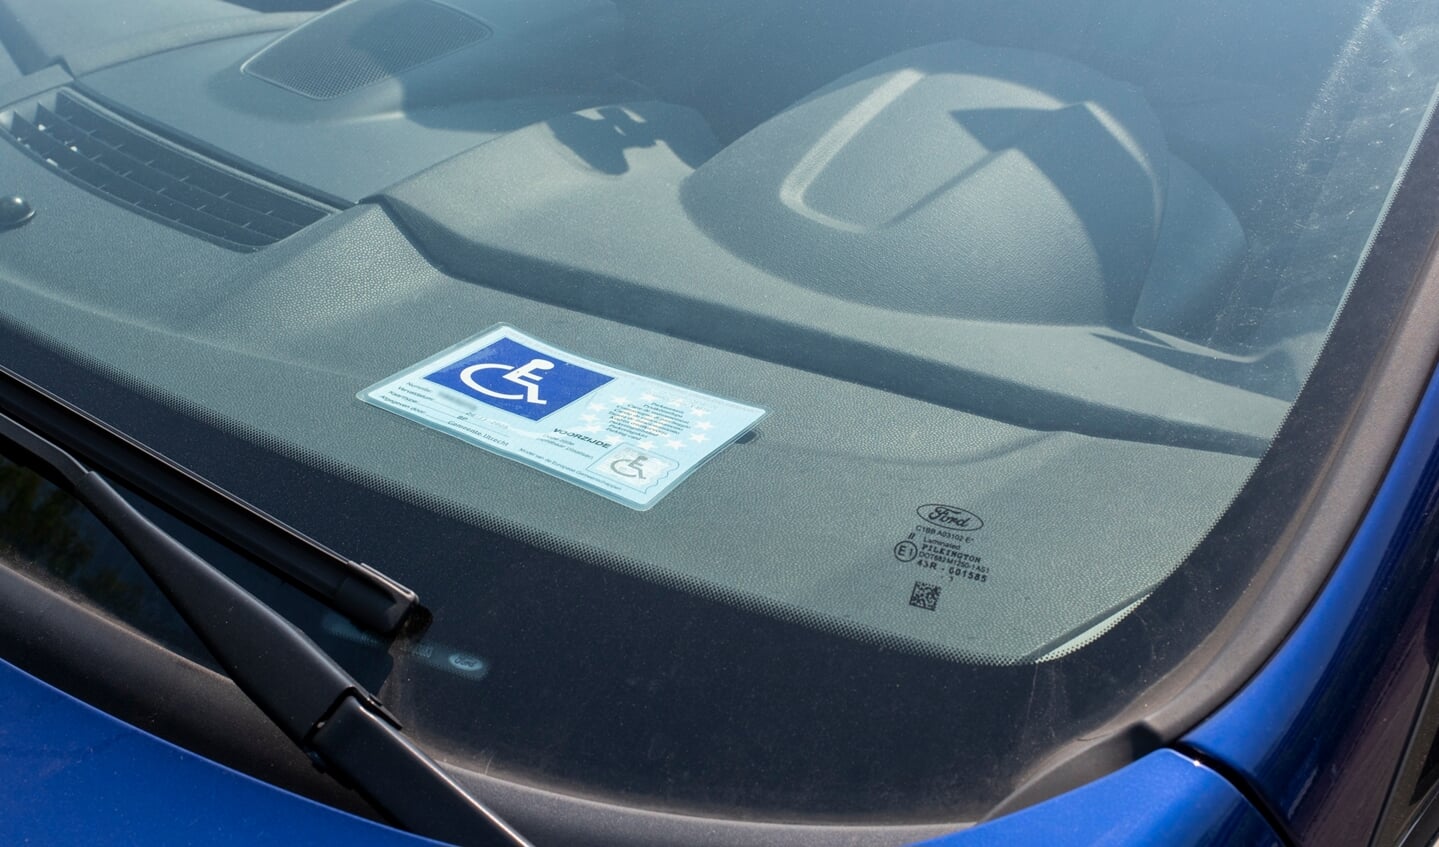 De gehandicaptenparkeerkaart op het dashbord van een auto